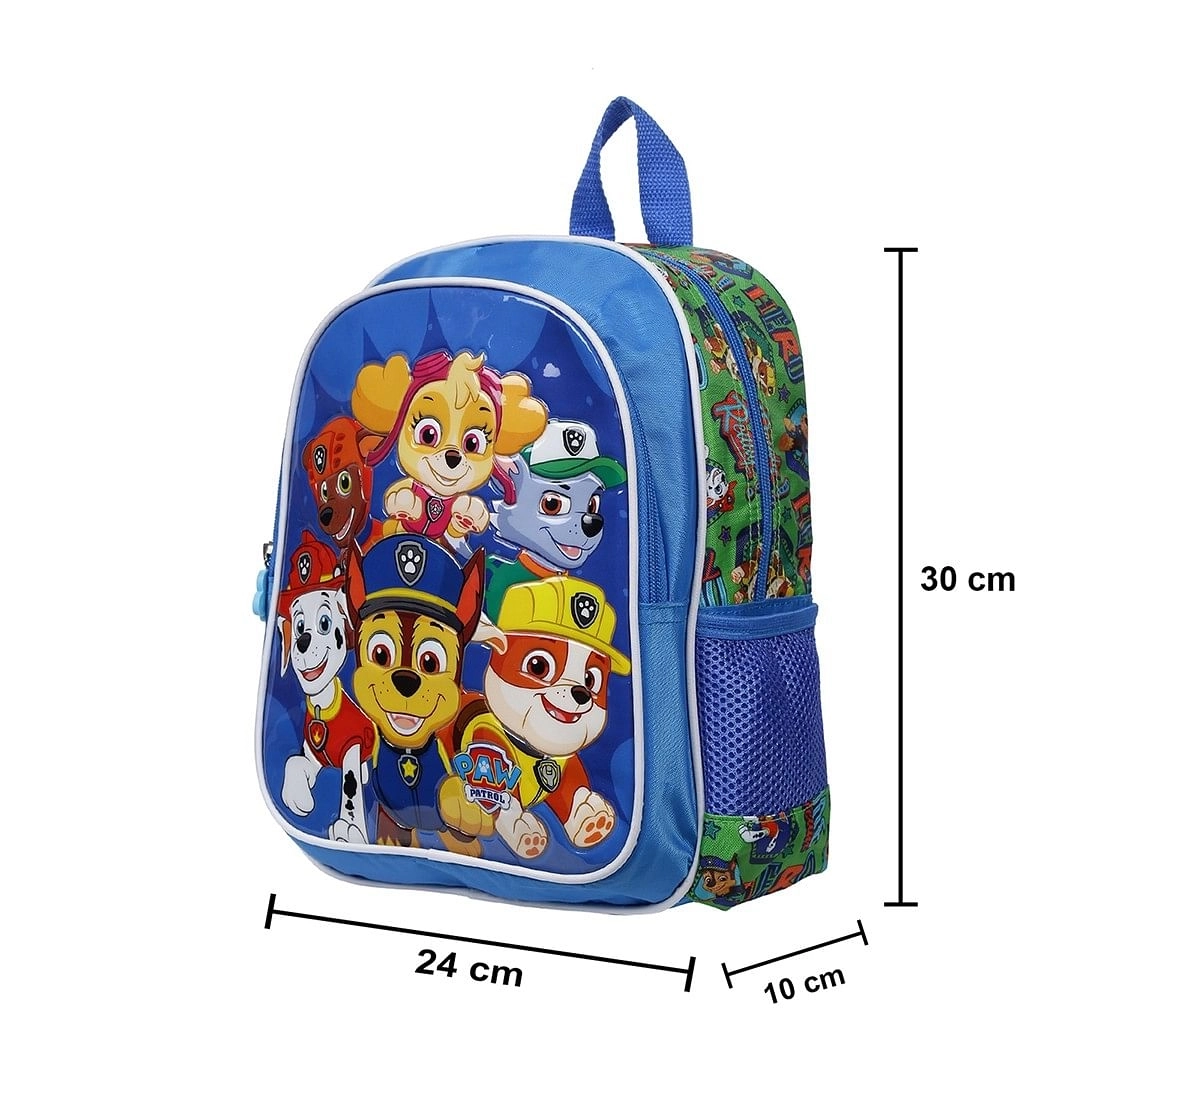 Paw Patrol Buddies 12 Backpack Bags for Kids age 3Y+ 